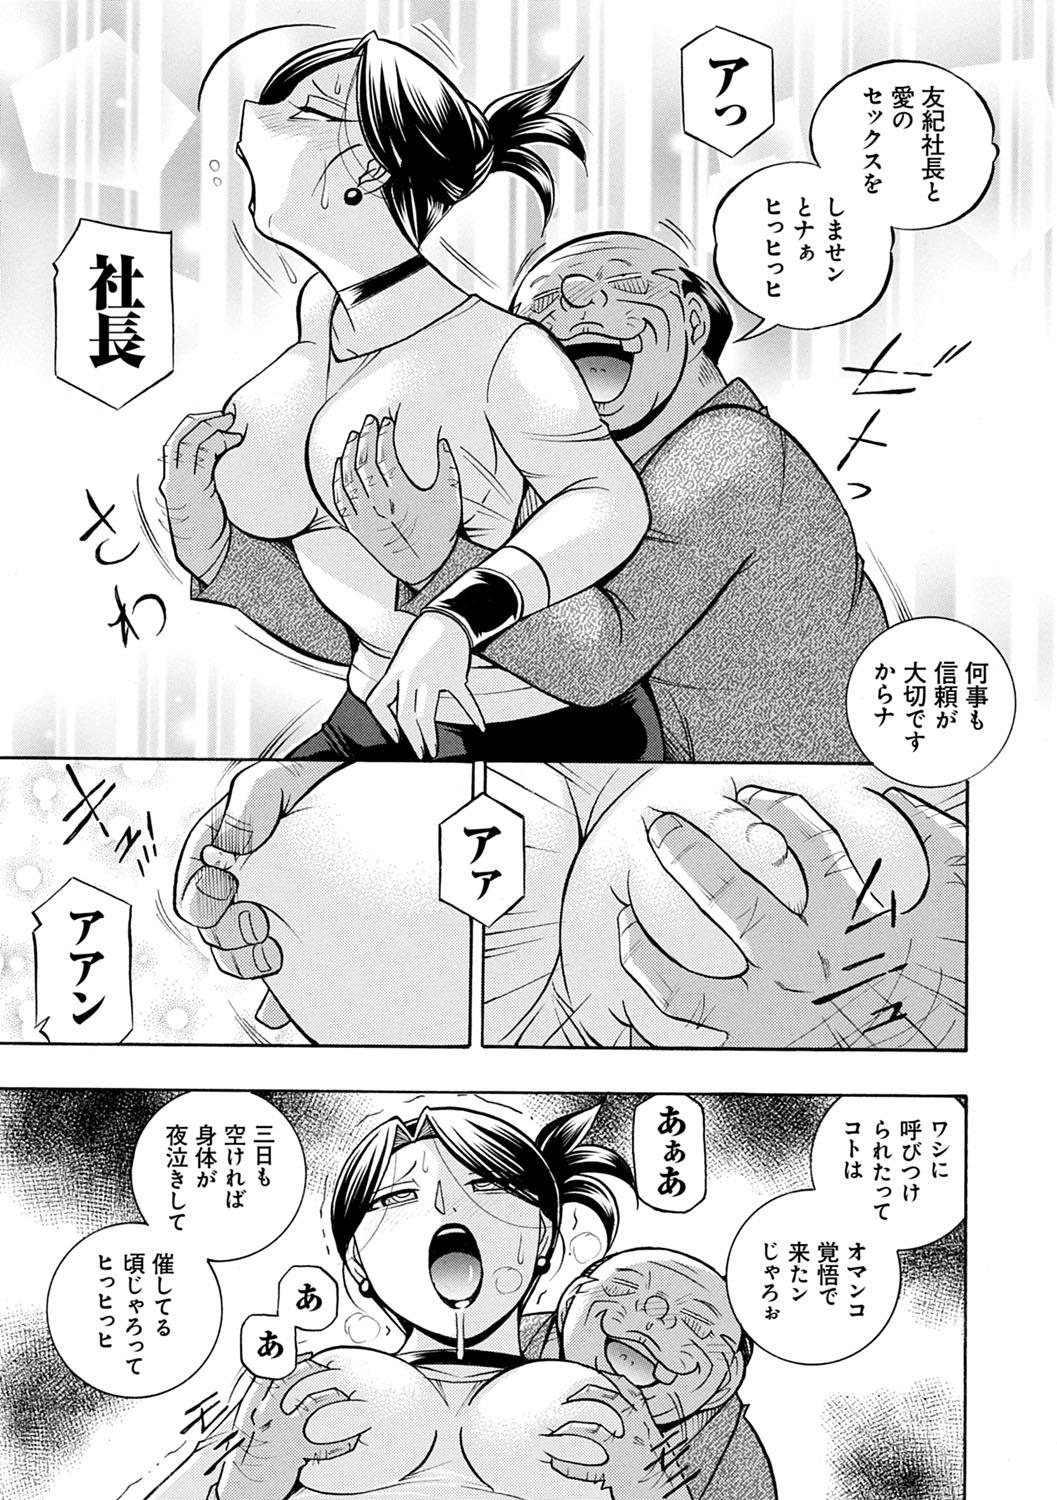 [Chuuka Naruto] Bijin Shachou Yuki ~Mitsuyaku no Nikusettai~ - YUKI of The Beautiful Chief Executive Officer ~The secret sweet treaty by sexual reception~ [Digital] 143